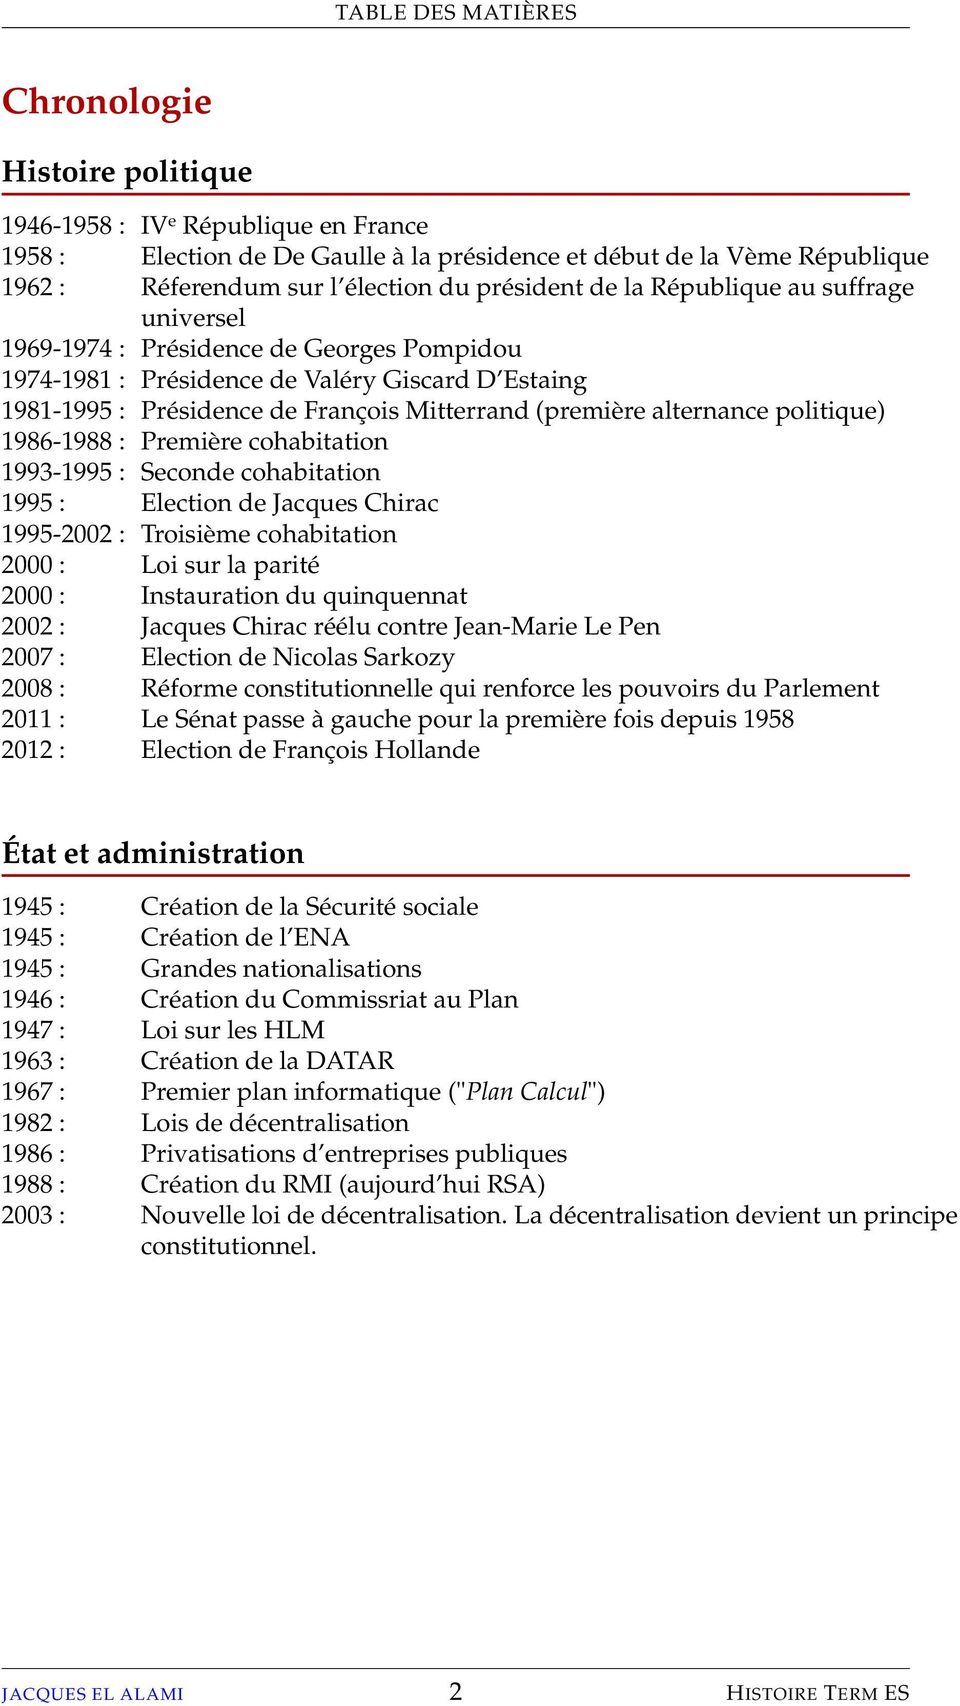 alternance politique) 1986-1988 : Première cohabitation 1993-1995 : Seconde cohabitation 1995 : Election de Jacques Chirac 1995-2002 : Troisième cohabitation 2000 : Loi sur la parité 2000 :